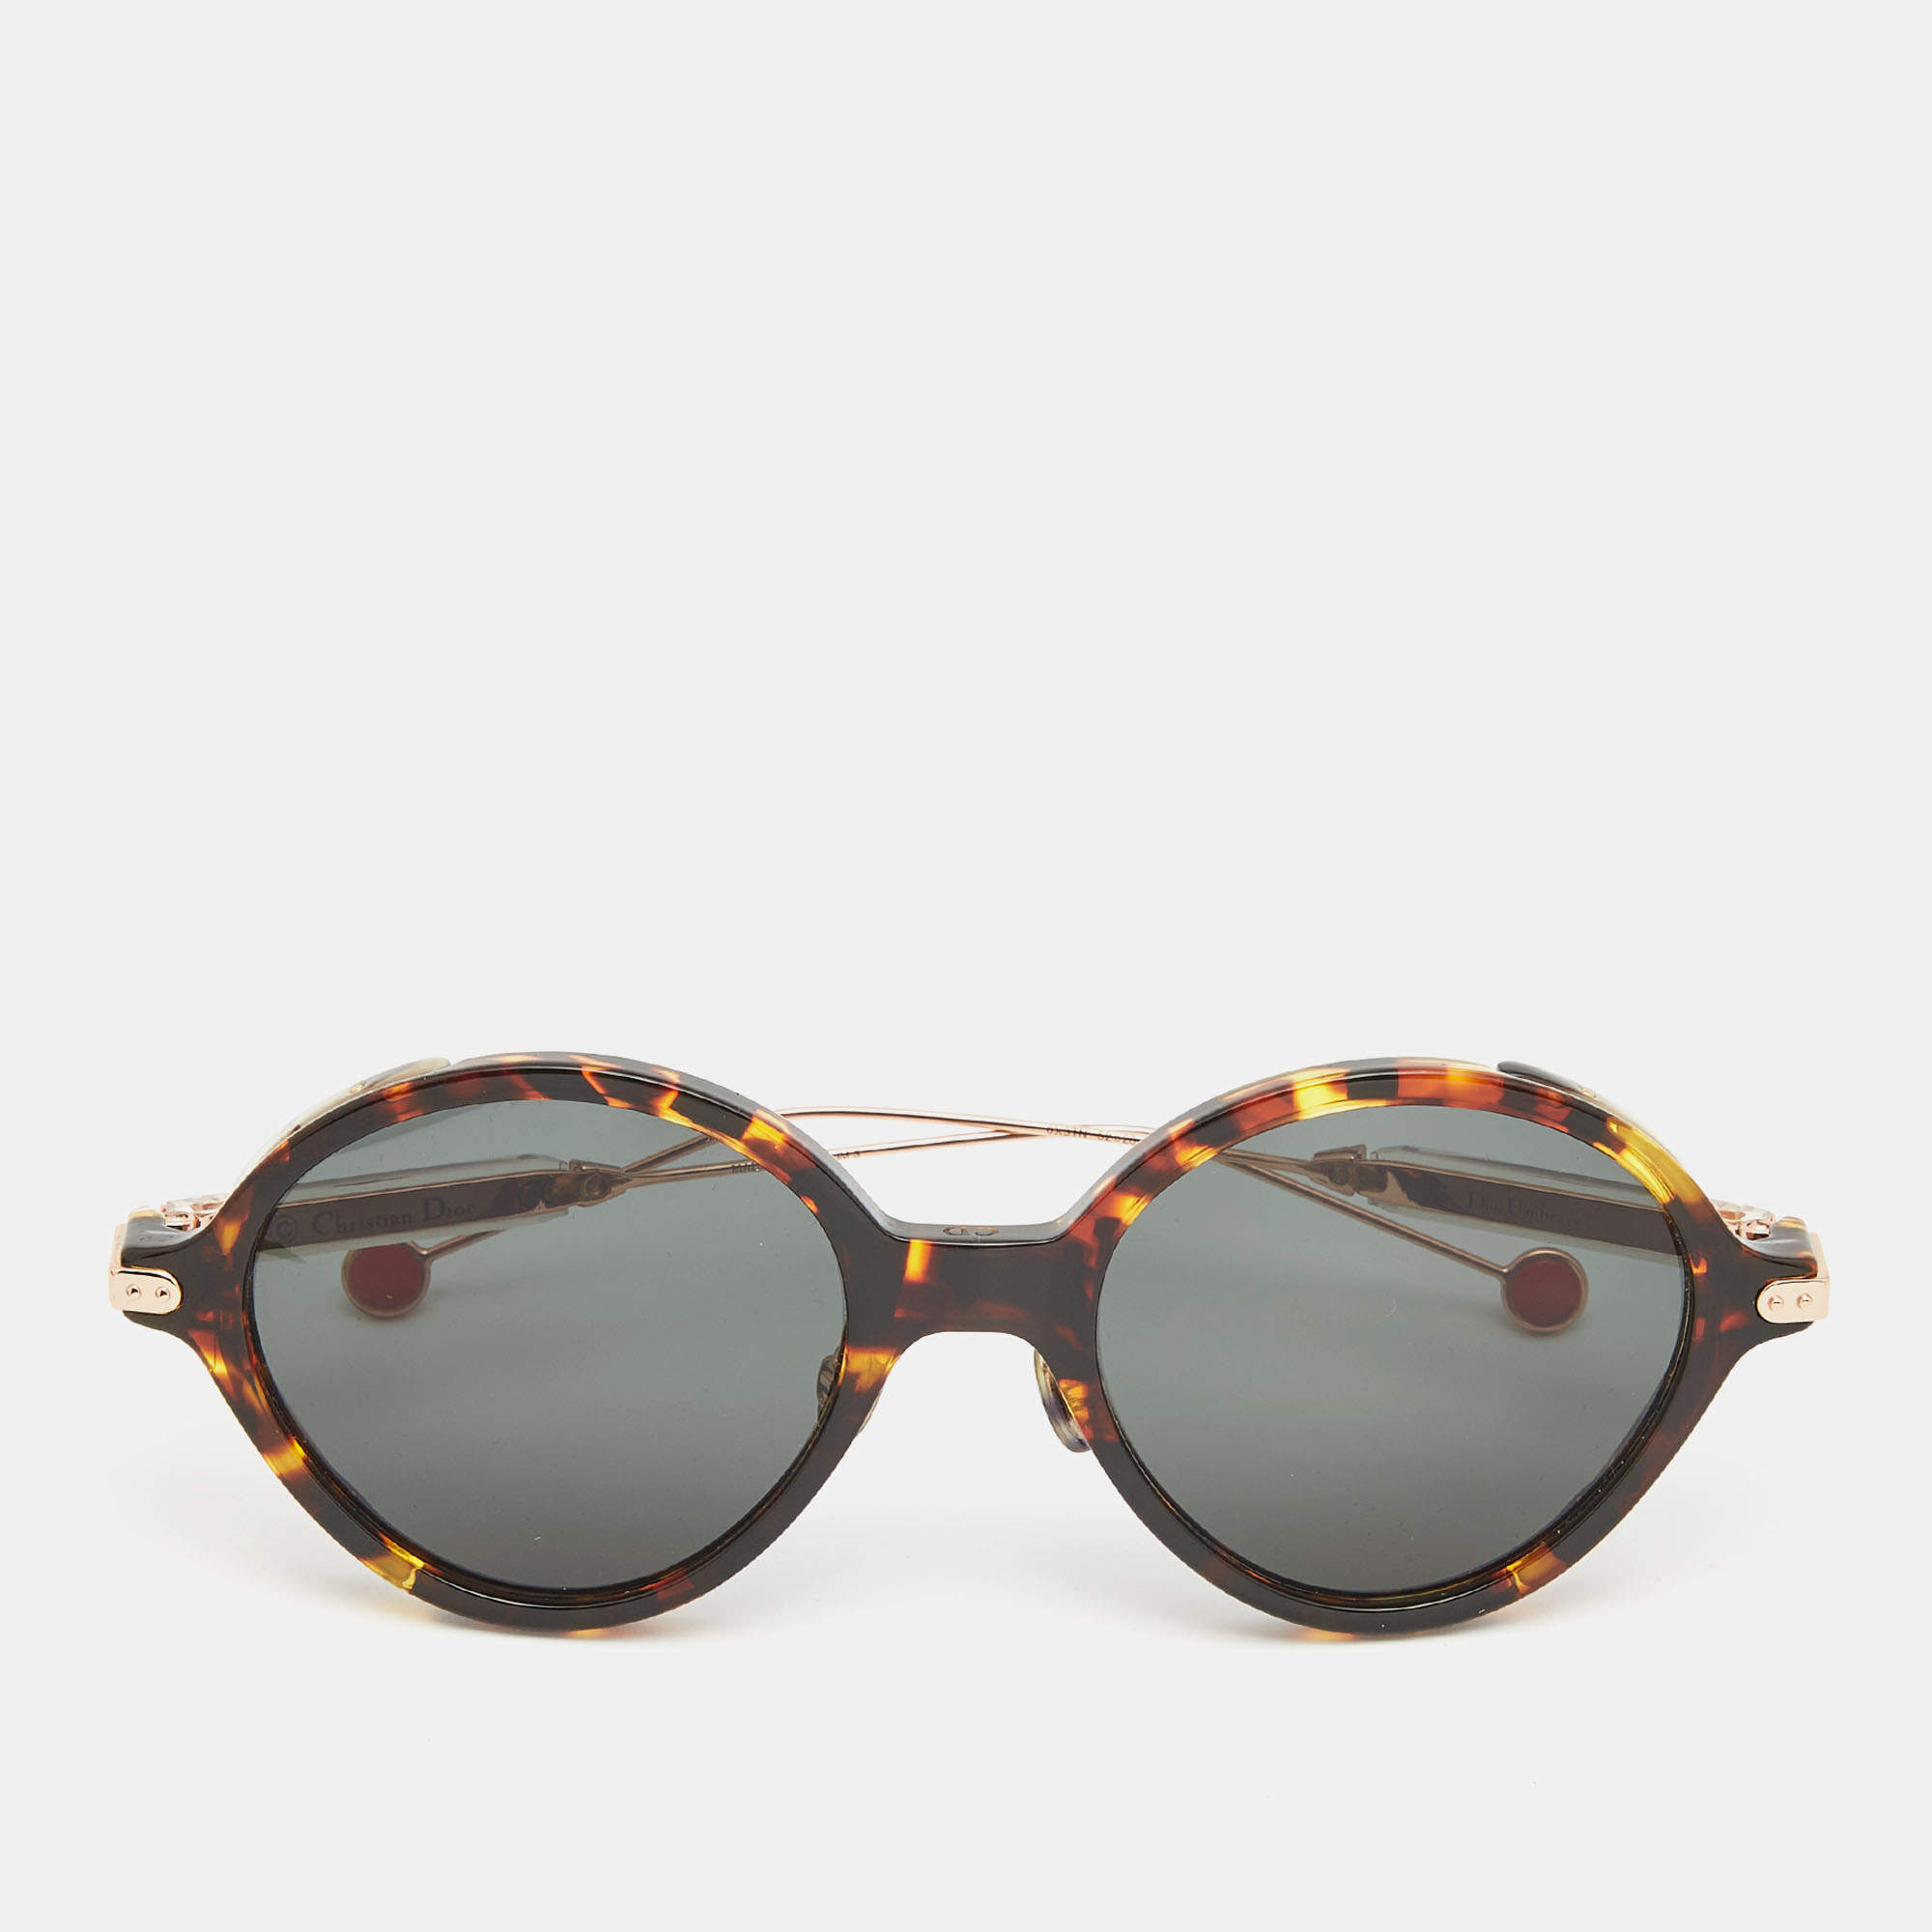 Christian Dior Umbrage Unisex 52mm Round Frame Sunglasses w Case   ShopHQcom